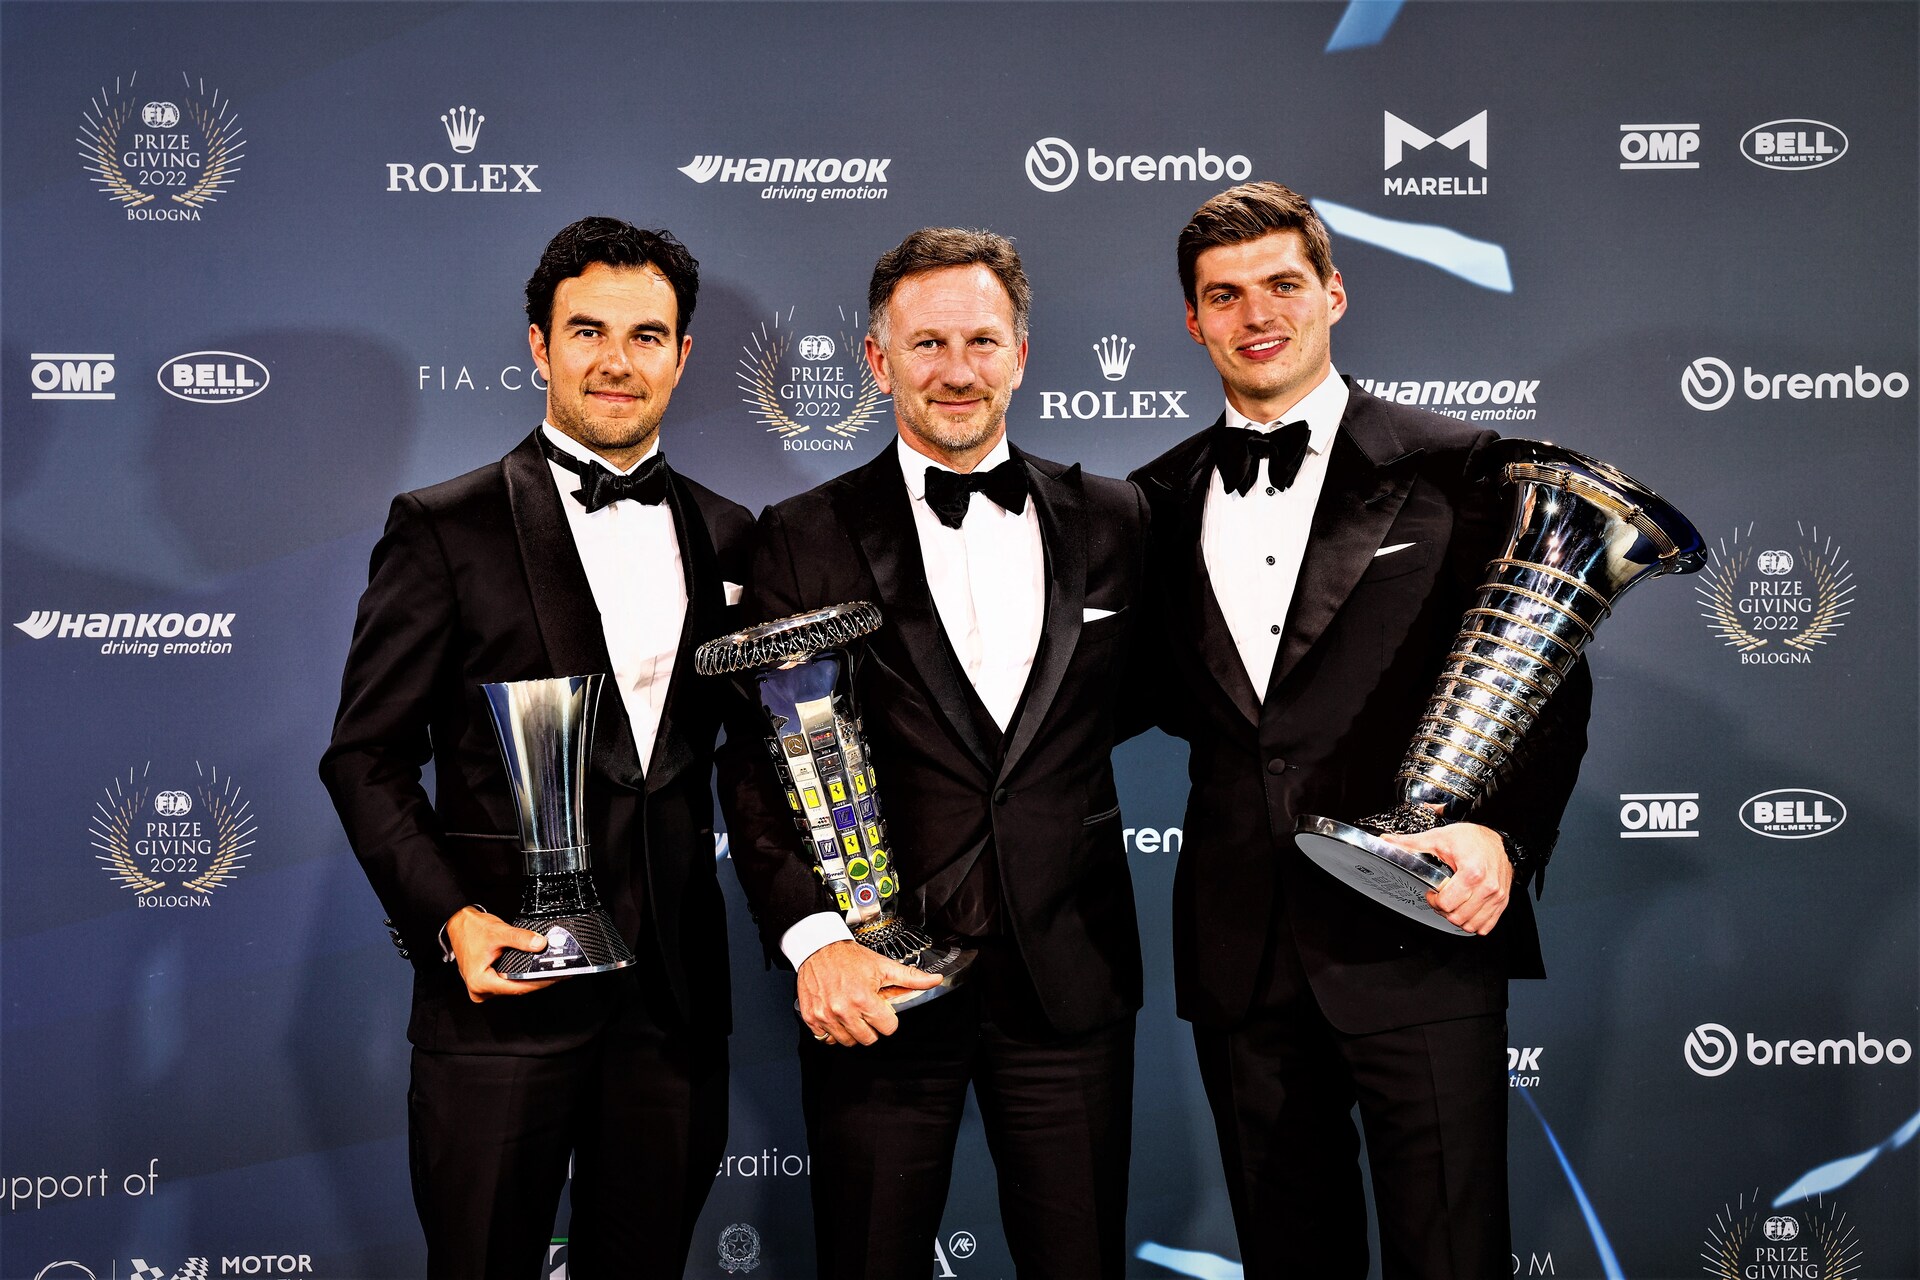 Inovație în sportul cu motor: Ceremonia de decernare a premiilor FIA 2022 la Bologna Christian Horner, directorul echipei Red Bull Racing în Formula 1, între piloții Sergio Pérez și Max Verstappen (Foto: FIA Media)